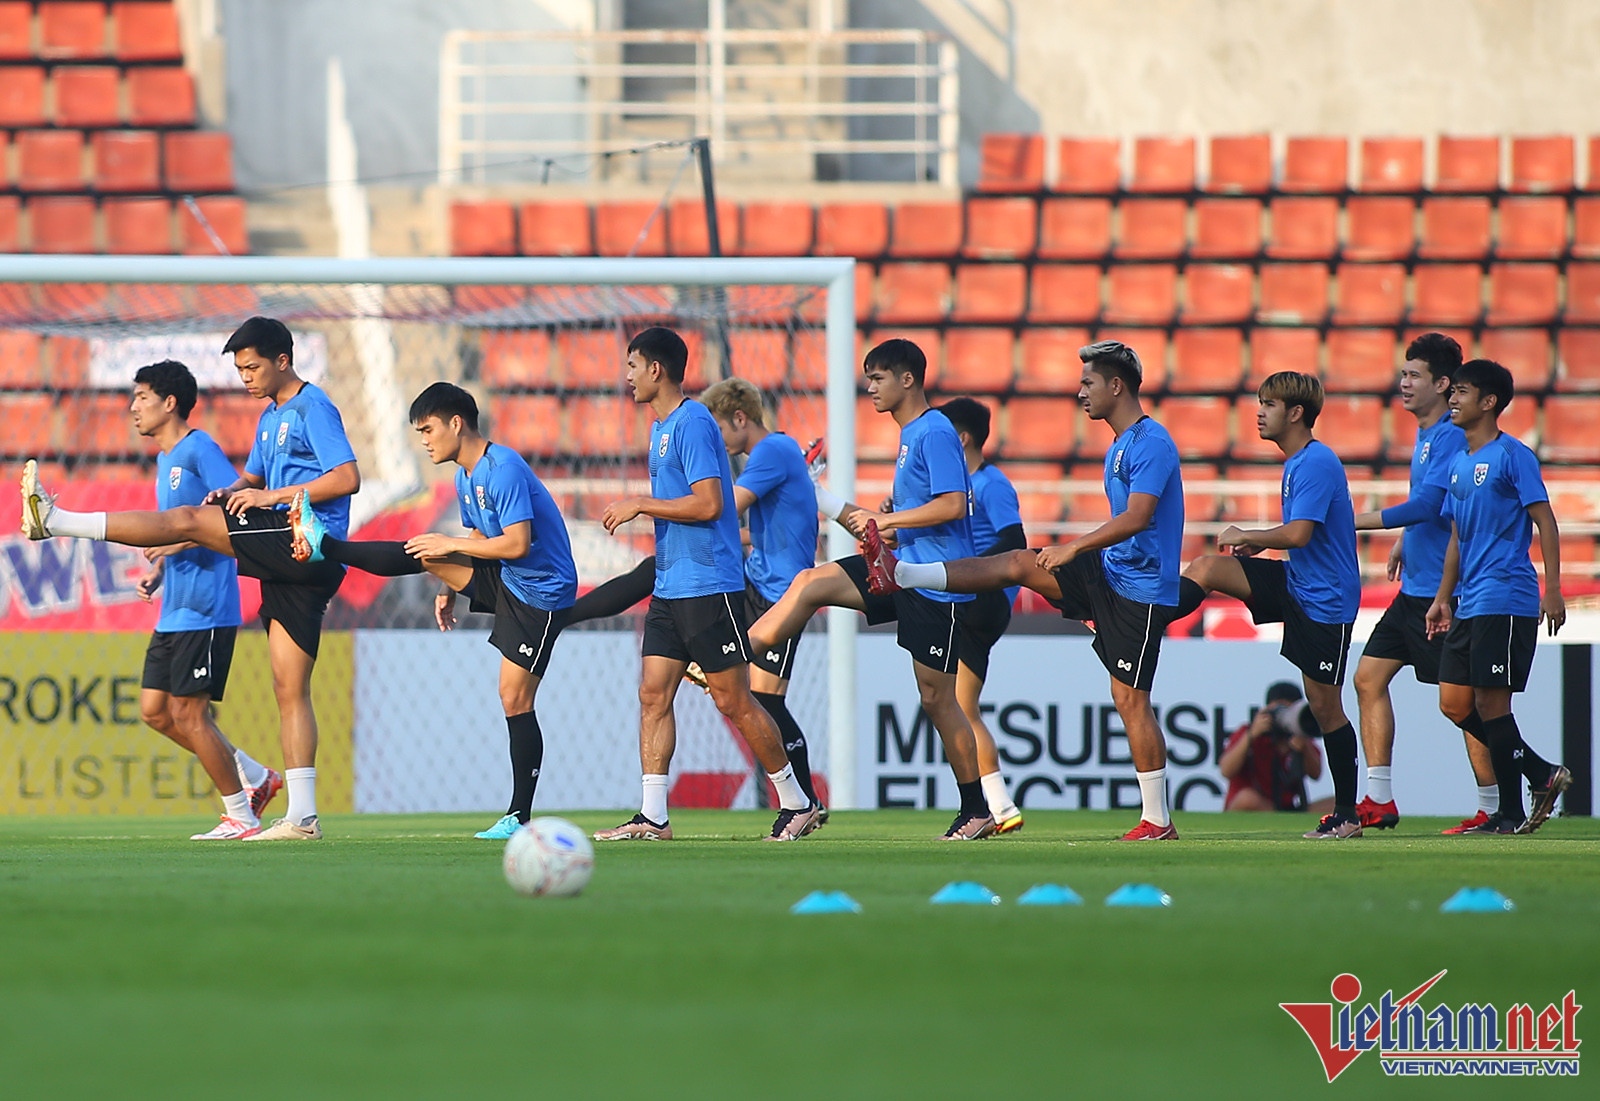 Báo Thái nhắc đội nhà, nêu yếu tố dễ giúp Việt Nam giành AFF Cup 2022